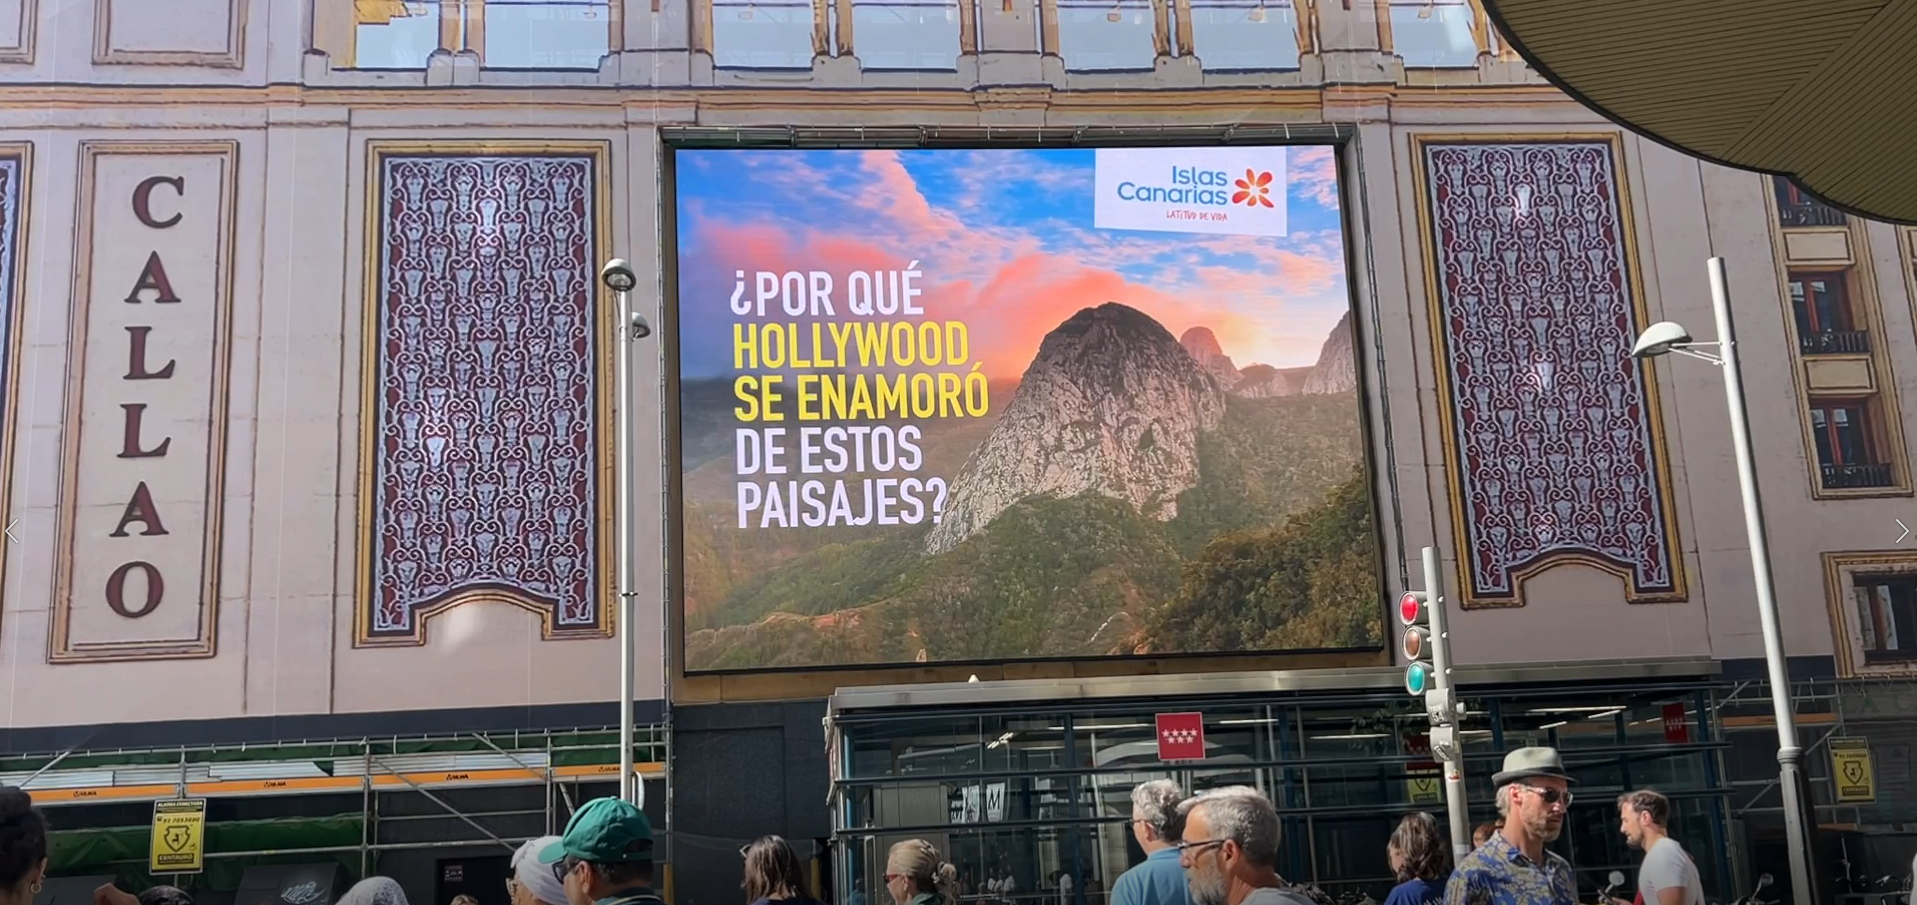 Proyección de la marca Islas Canarias en Callao, Madrid